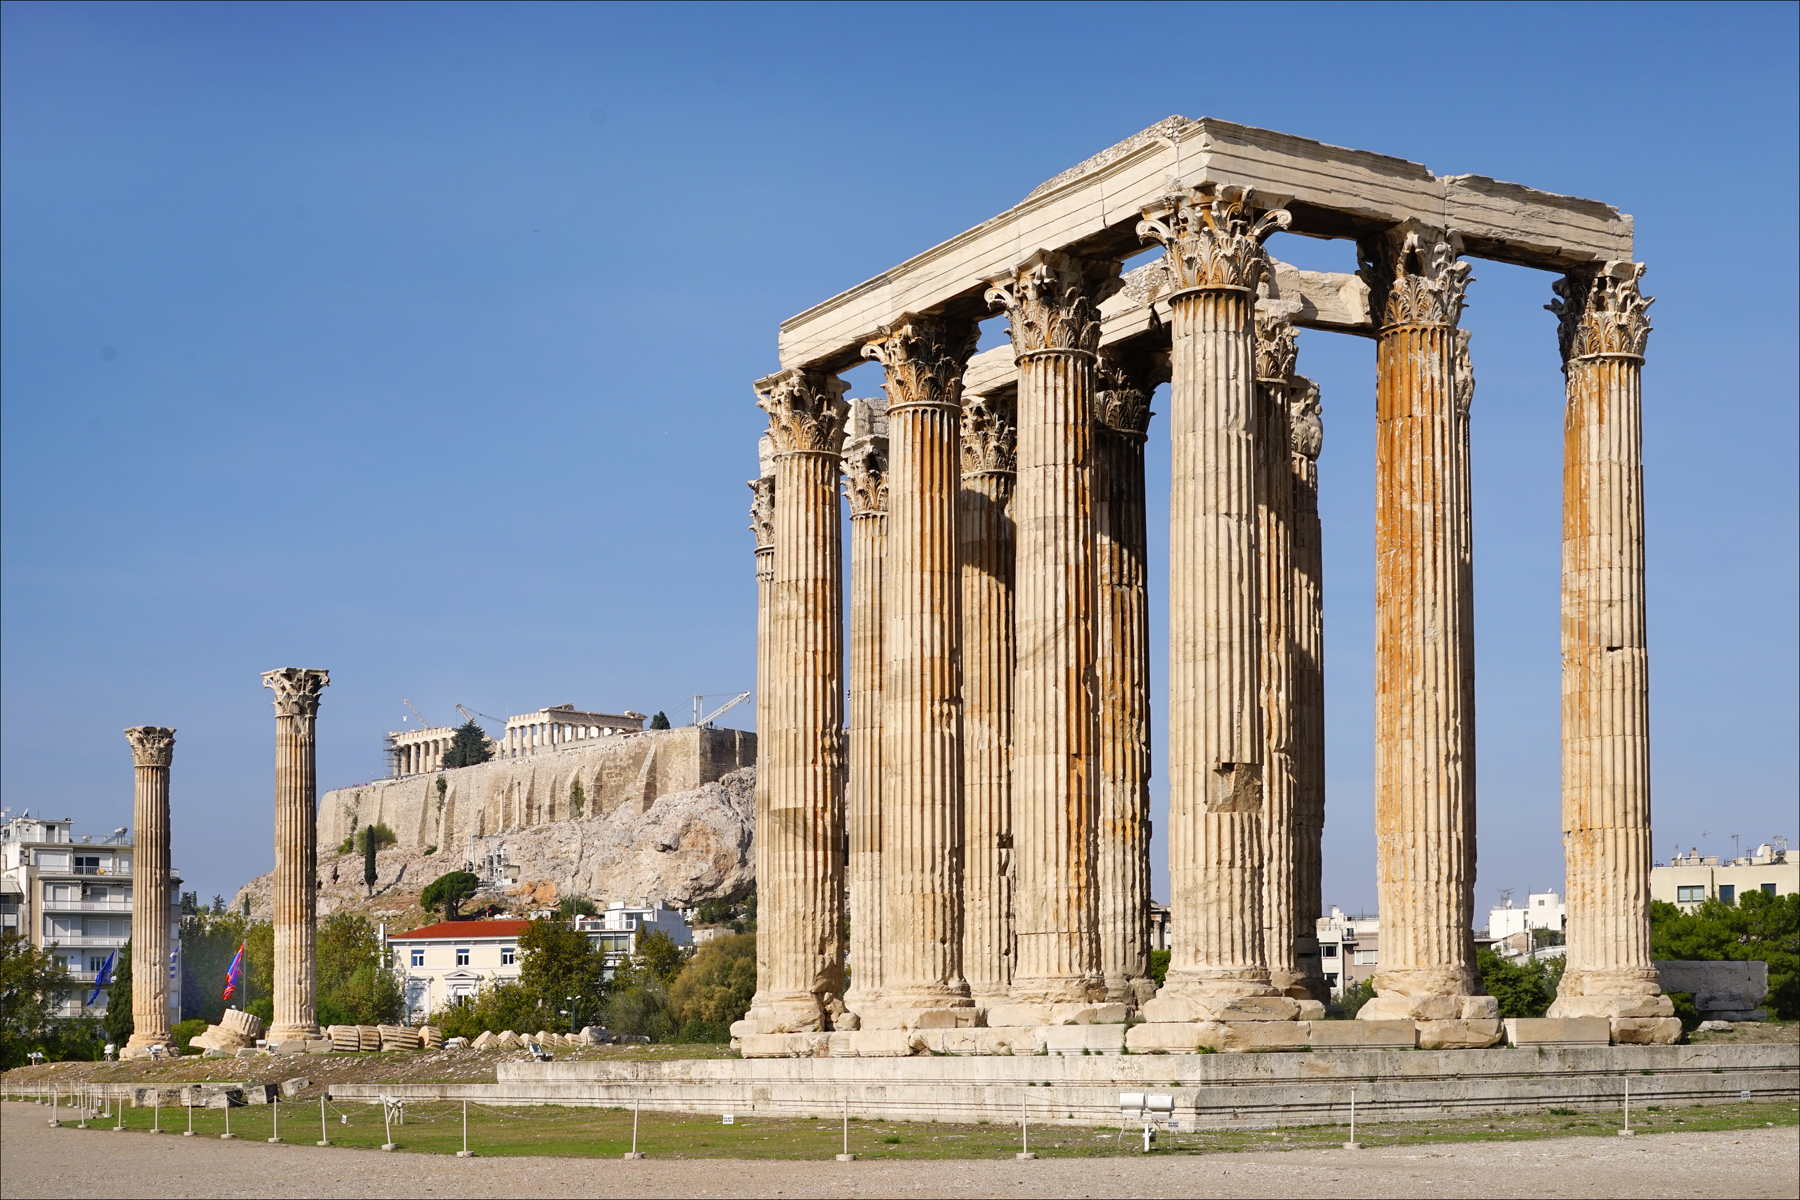 Die Manjifieke Tempel van Olimpiese Zeus in Athene